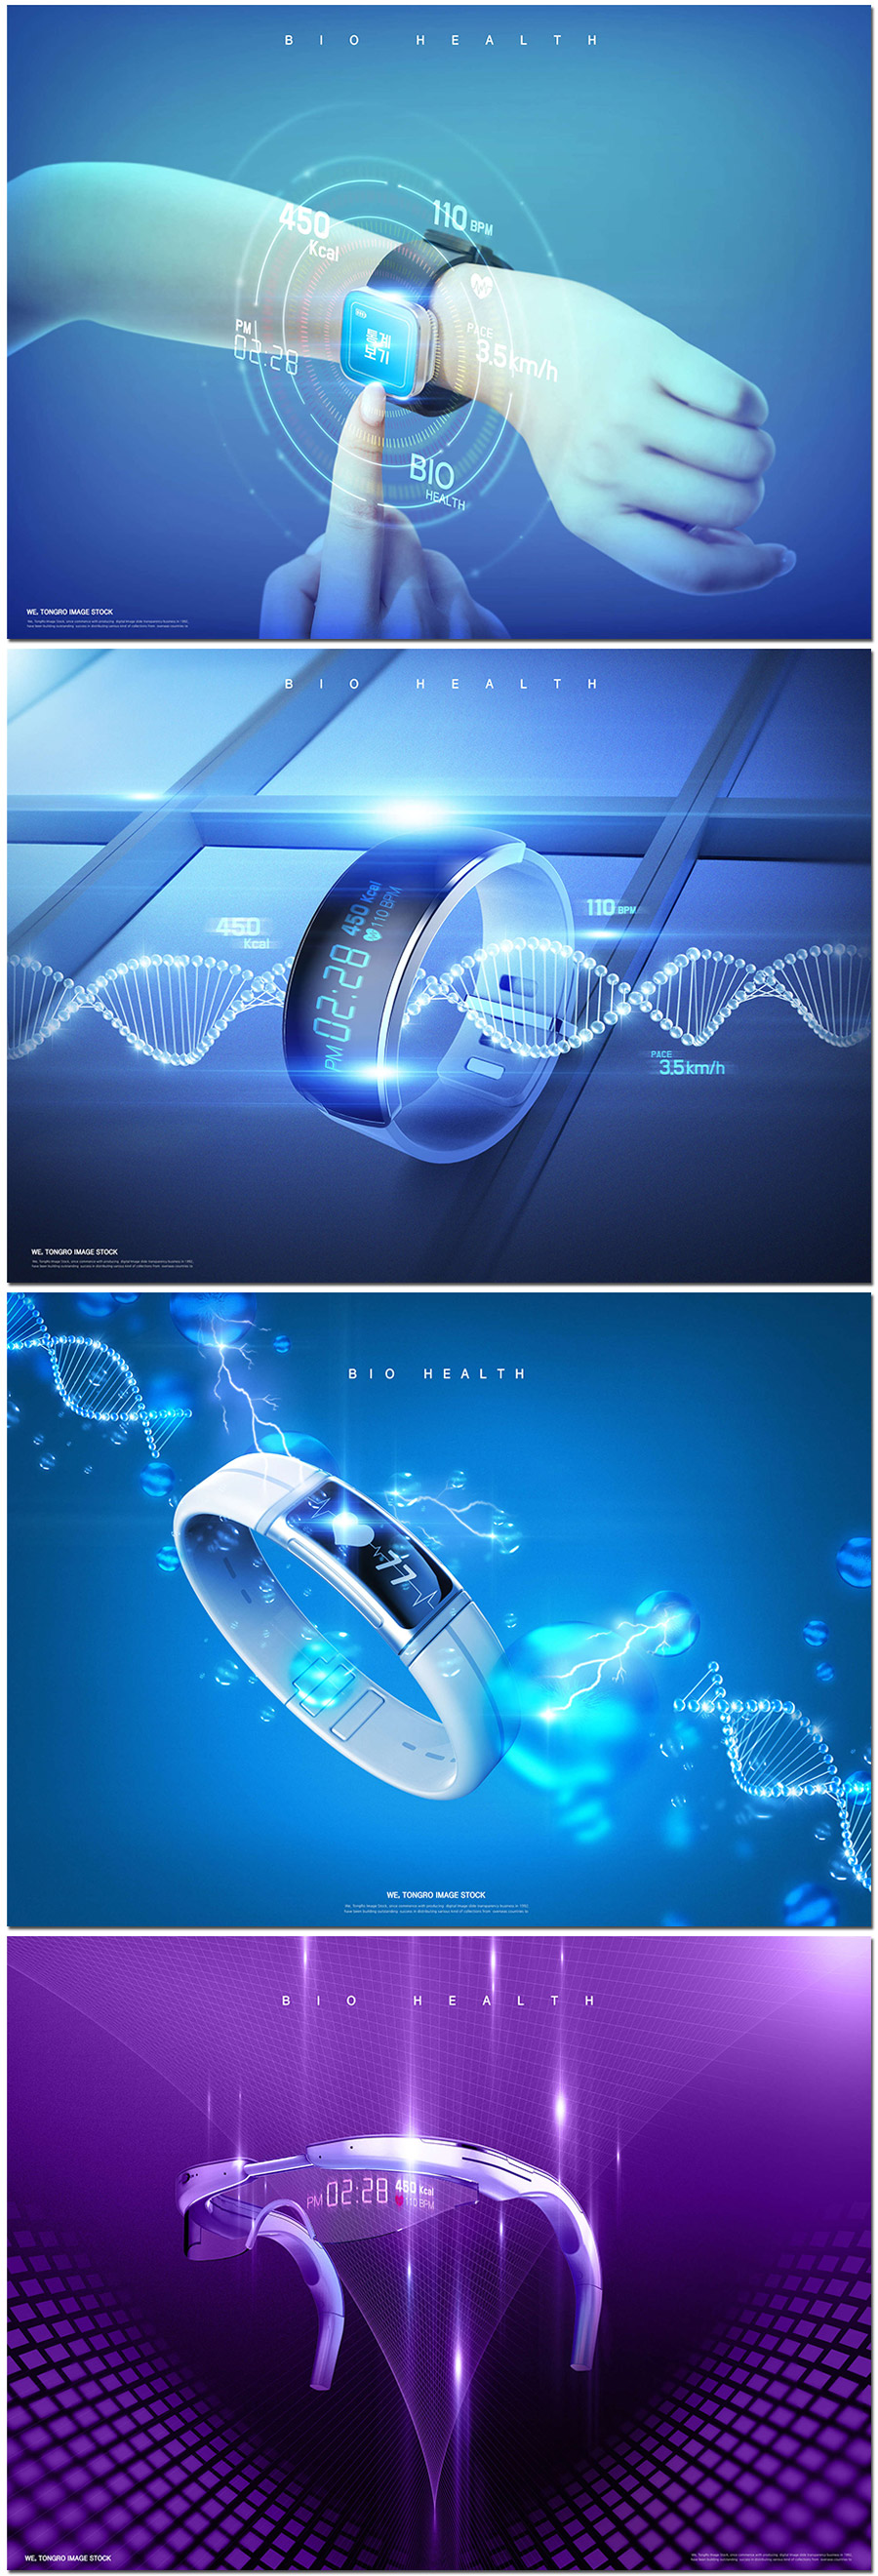 未来科技生活智能手环手表耳机互联网风格海报设计psd模板素材